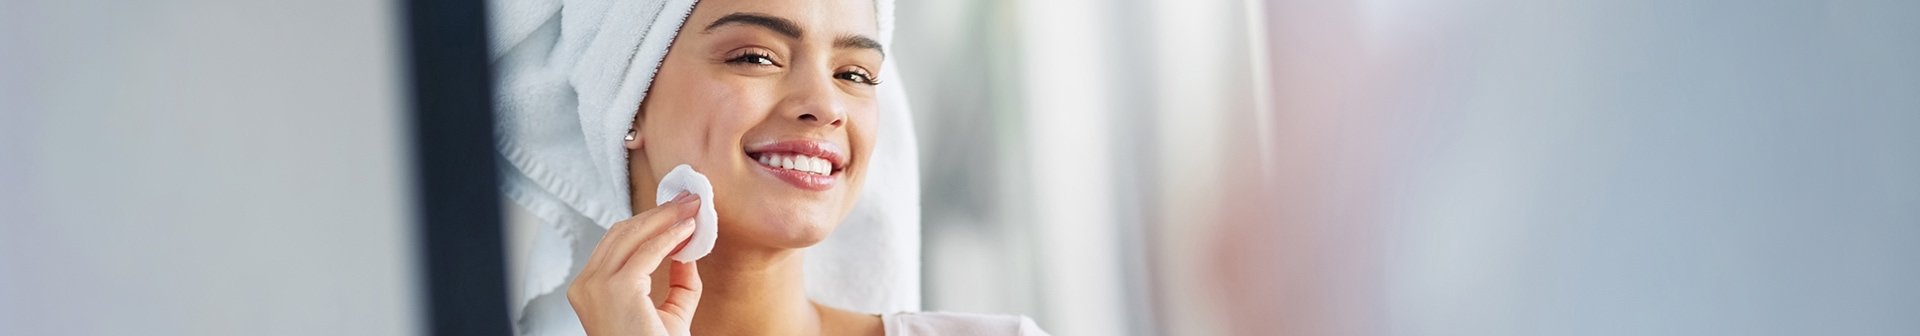 Lächelndes Gesicht einer Frau mit einem Wattepad in der Hand und einem Handtuch auf dem Kopf